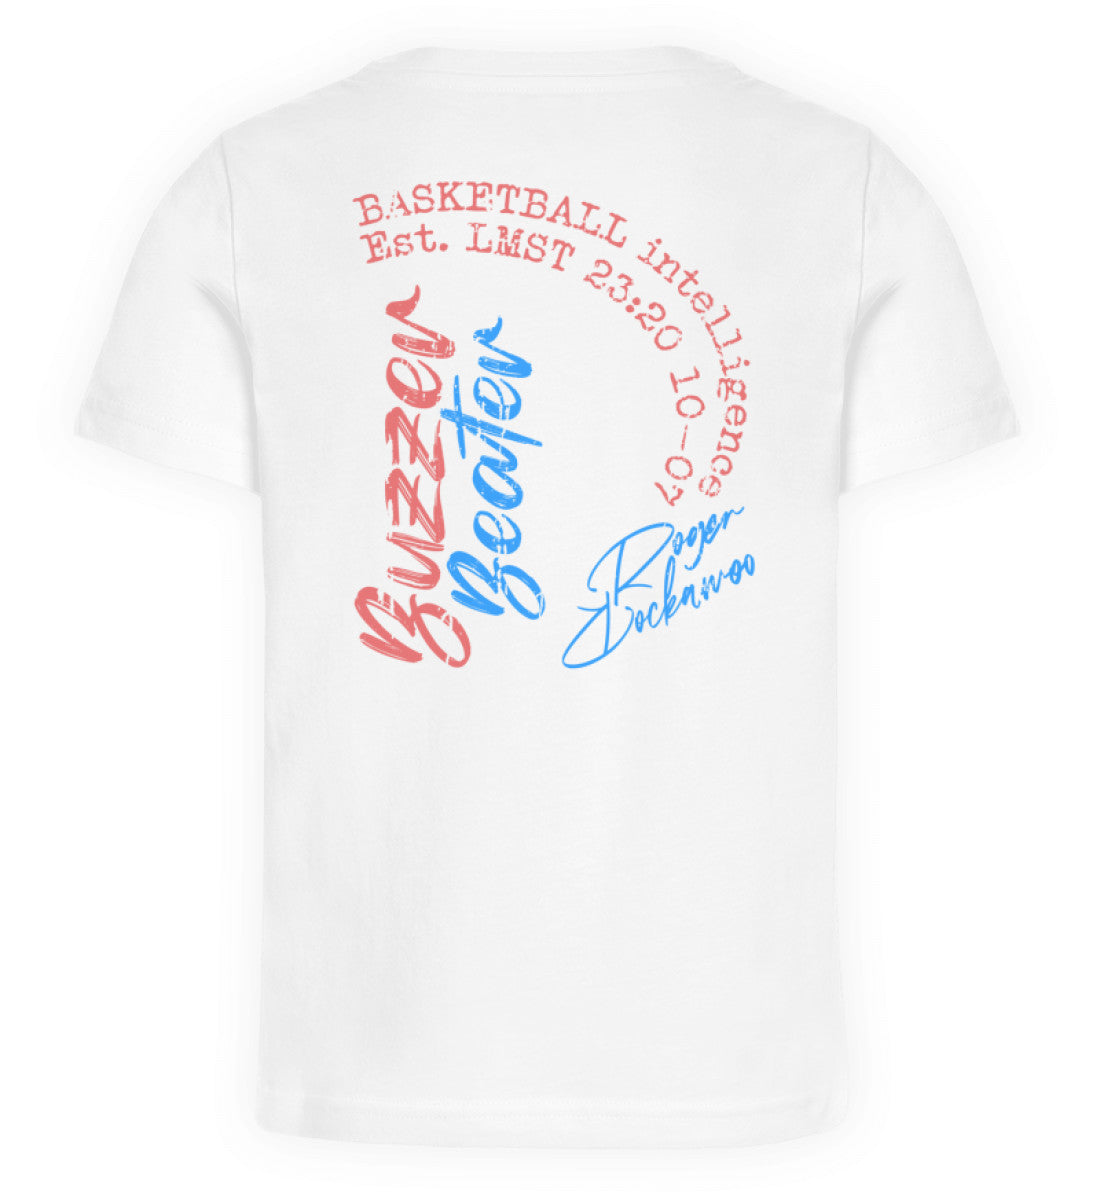 Weißes Kinder T-Shirt für Mädchen und Jungen bedruckt mit dem Design der Roger Rockawoo Kollektion Basketball Streetball Buzzer Beater